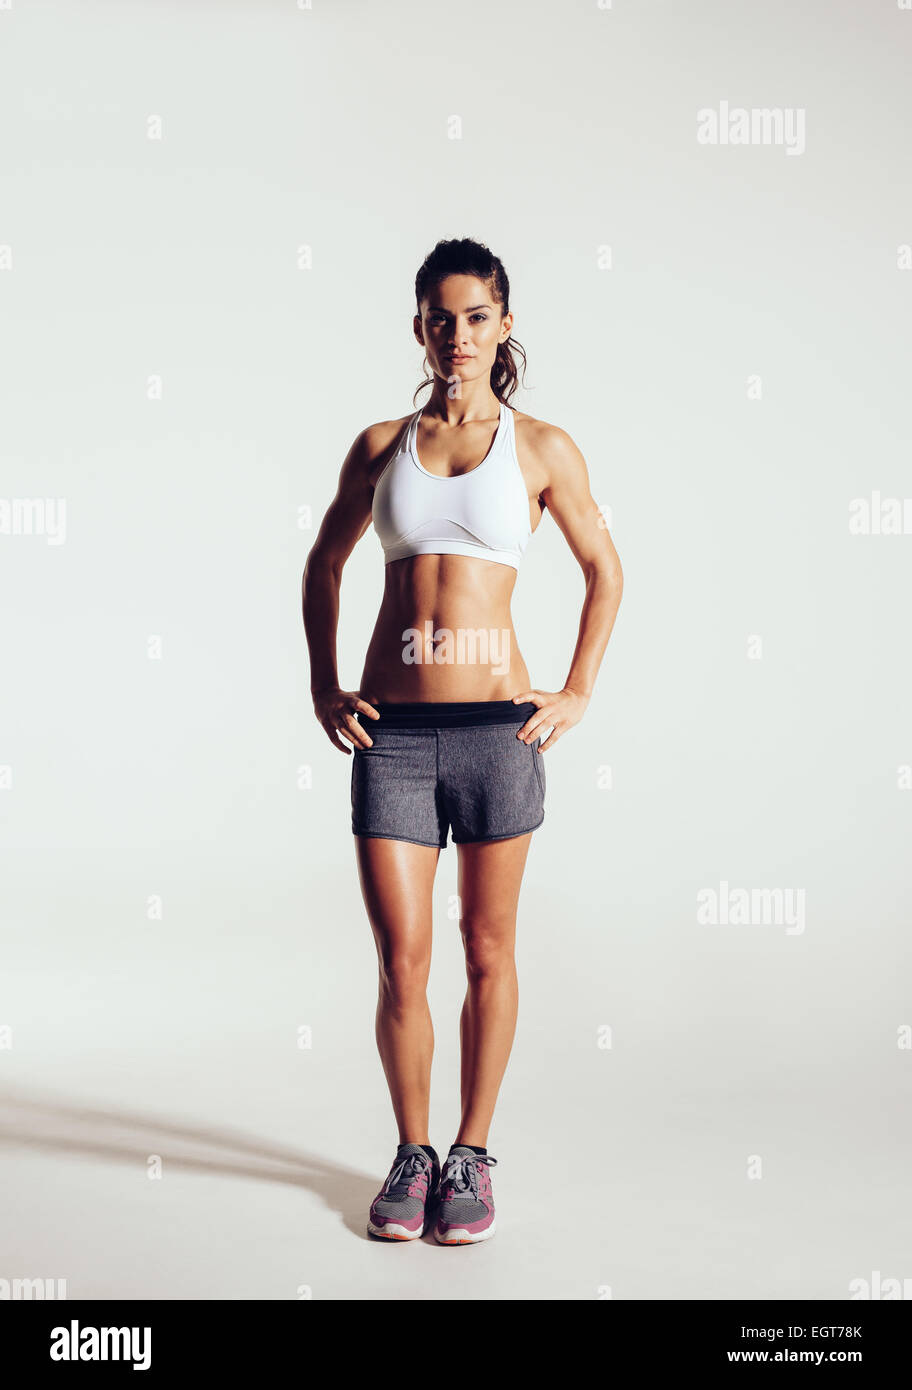 Junge Frau mit schönen schlanken gesunden Körper posiert im Studio. Weibliches Model Fitness Sportswear auf grauem Hintergrund Stockfoto